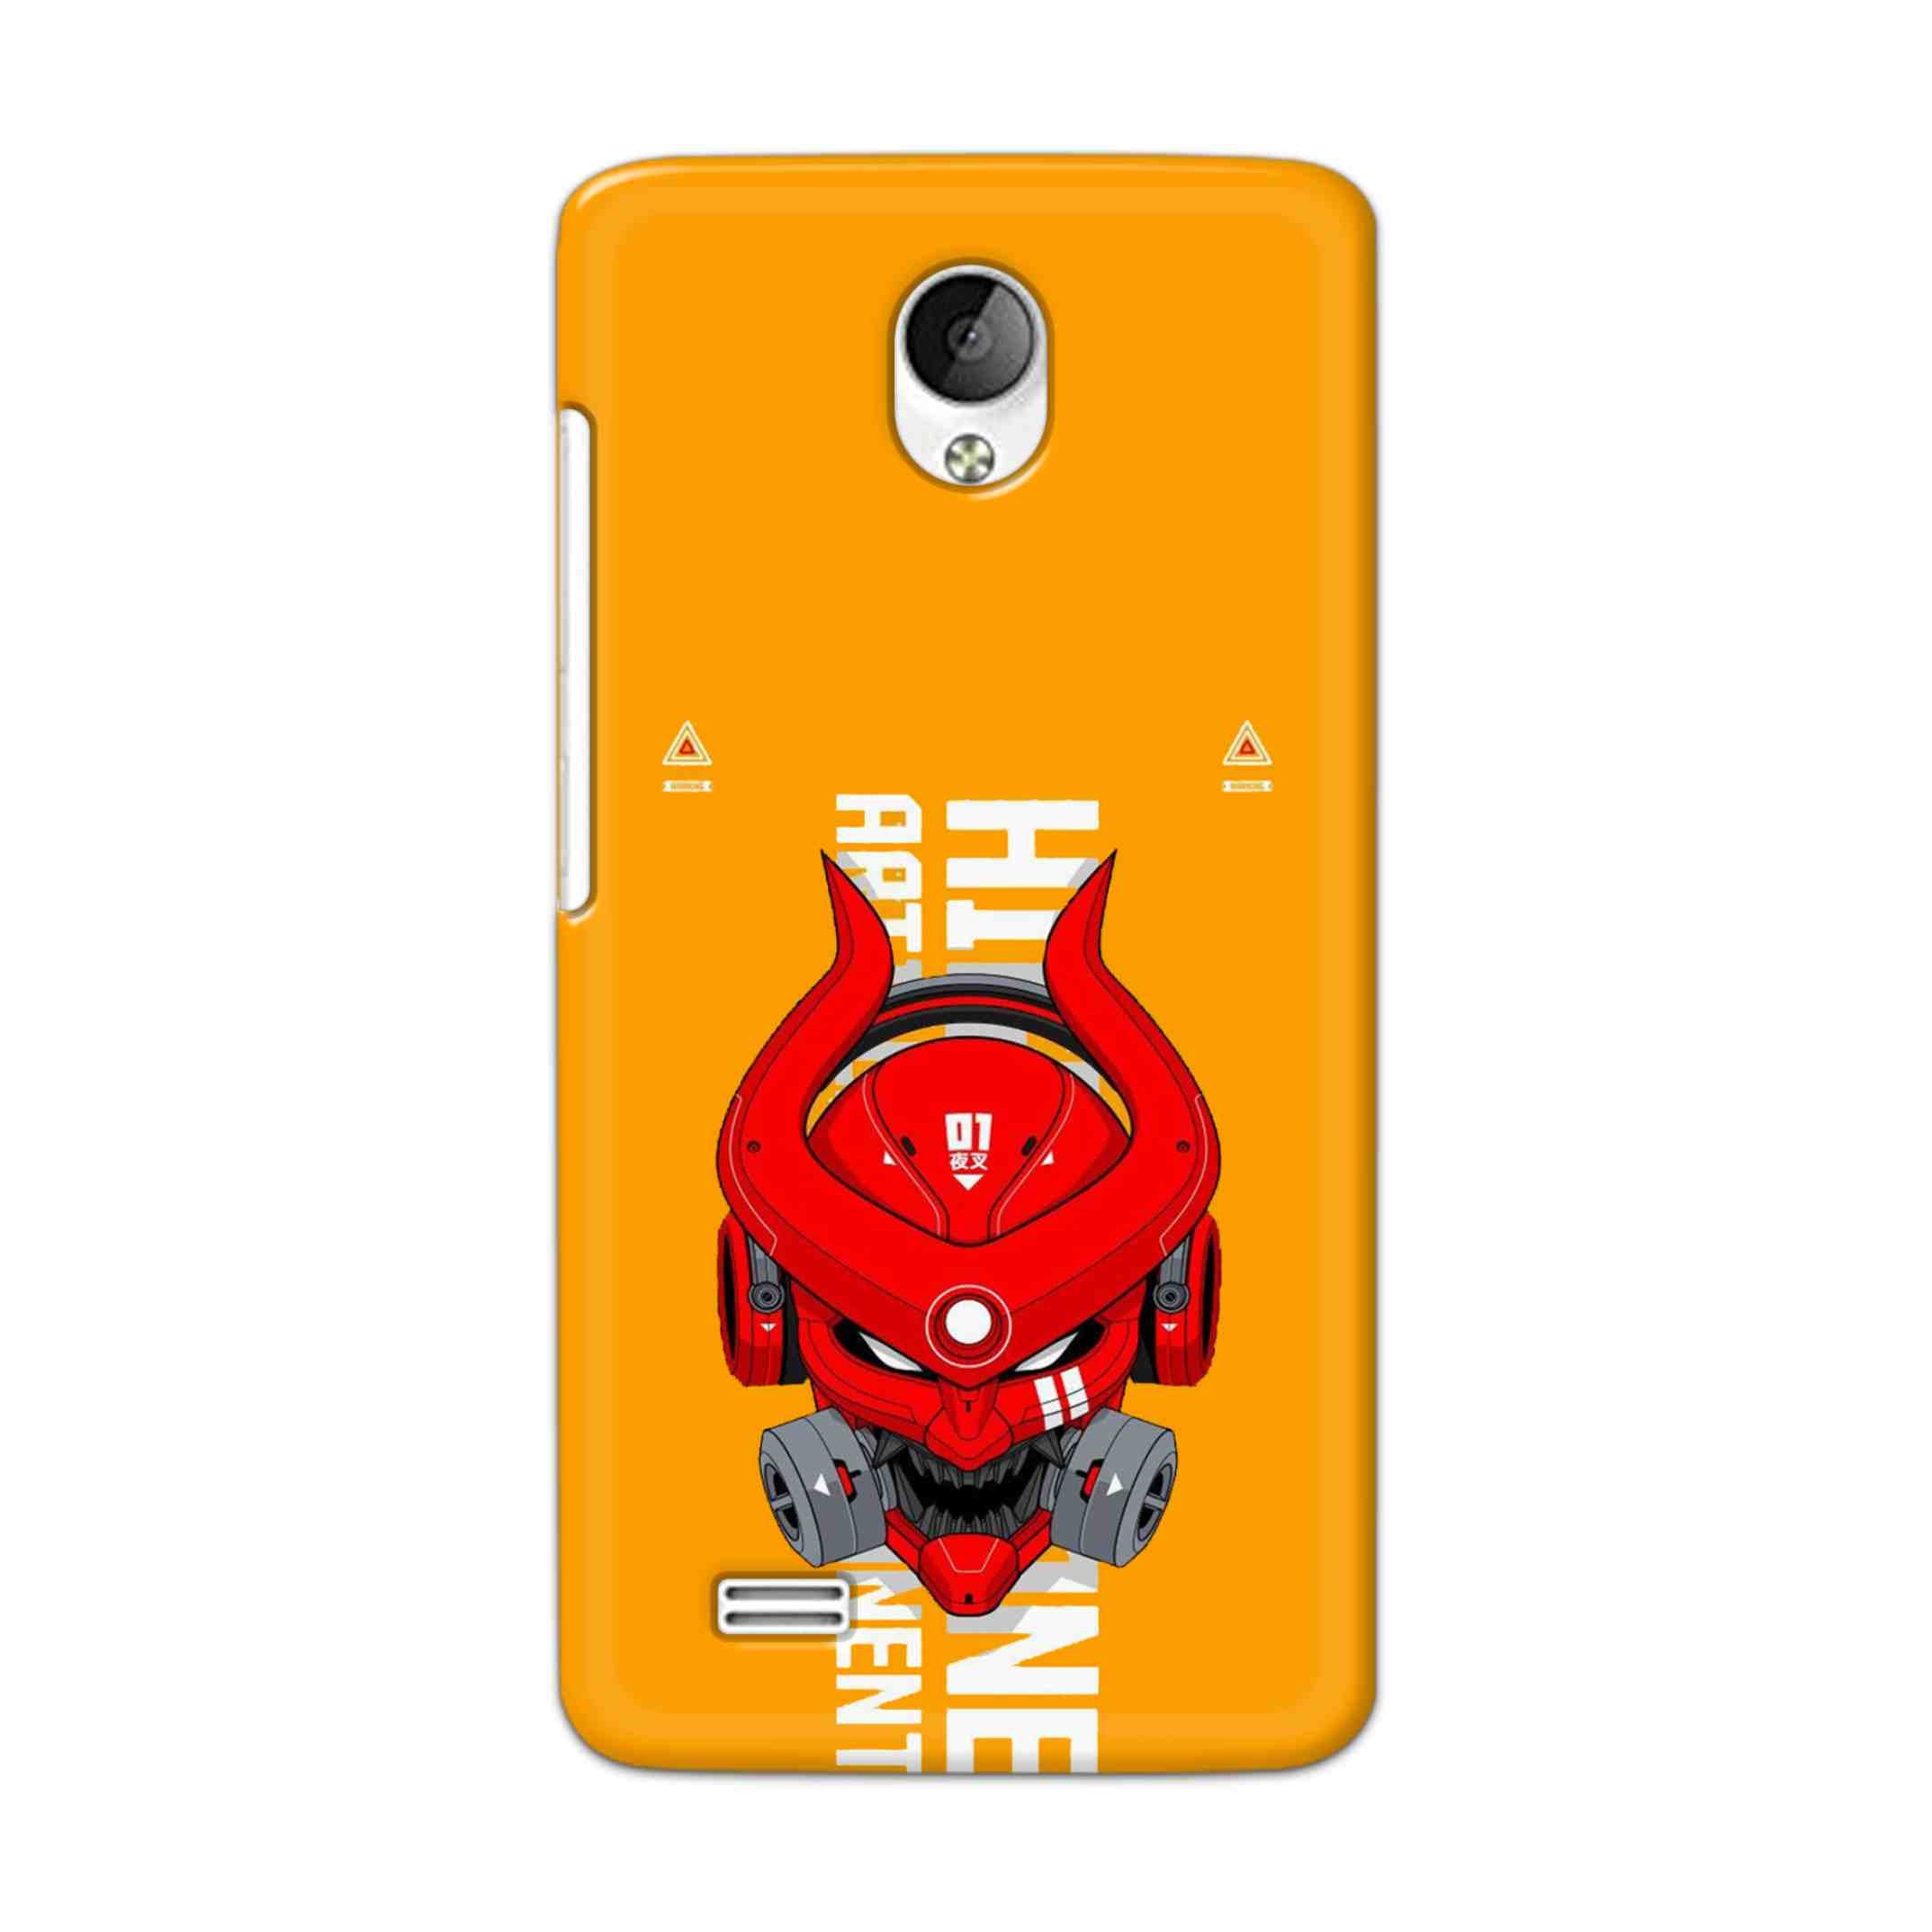 Buy Bull Skull Hard Back Mobile Phone Case Cover For Vivo Y21 / Vivo Y21L Online